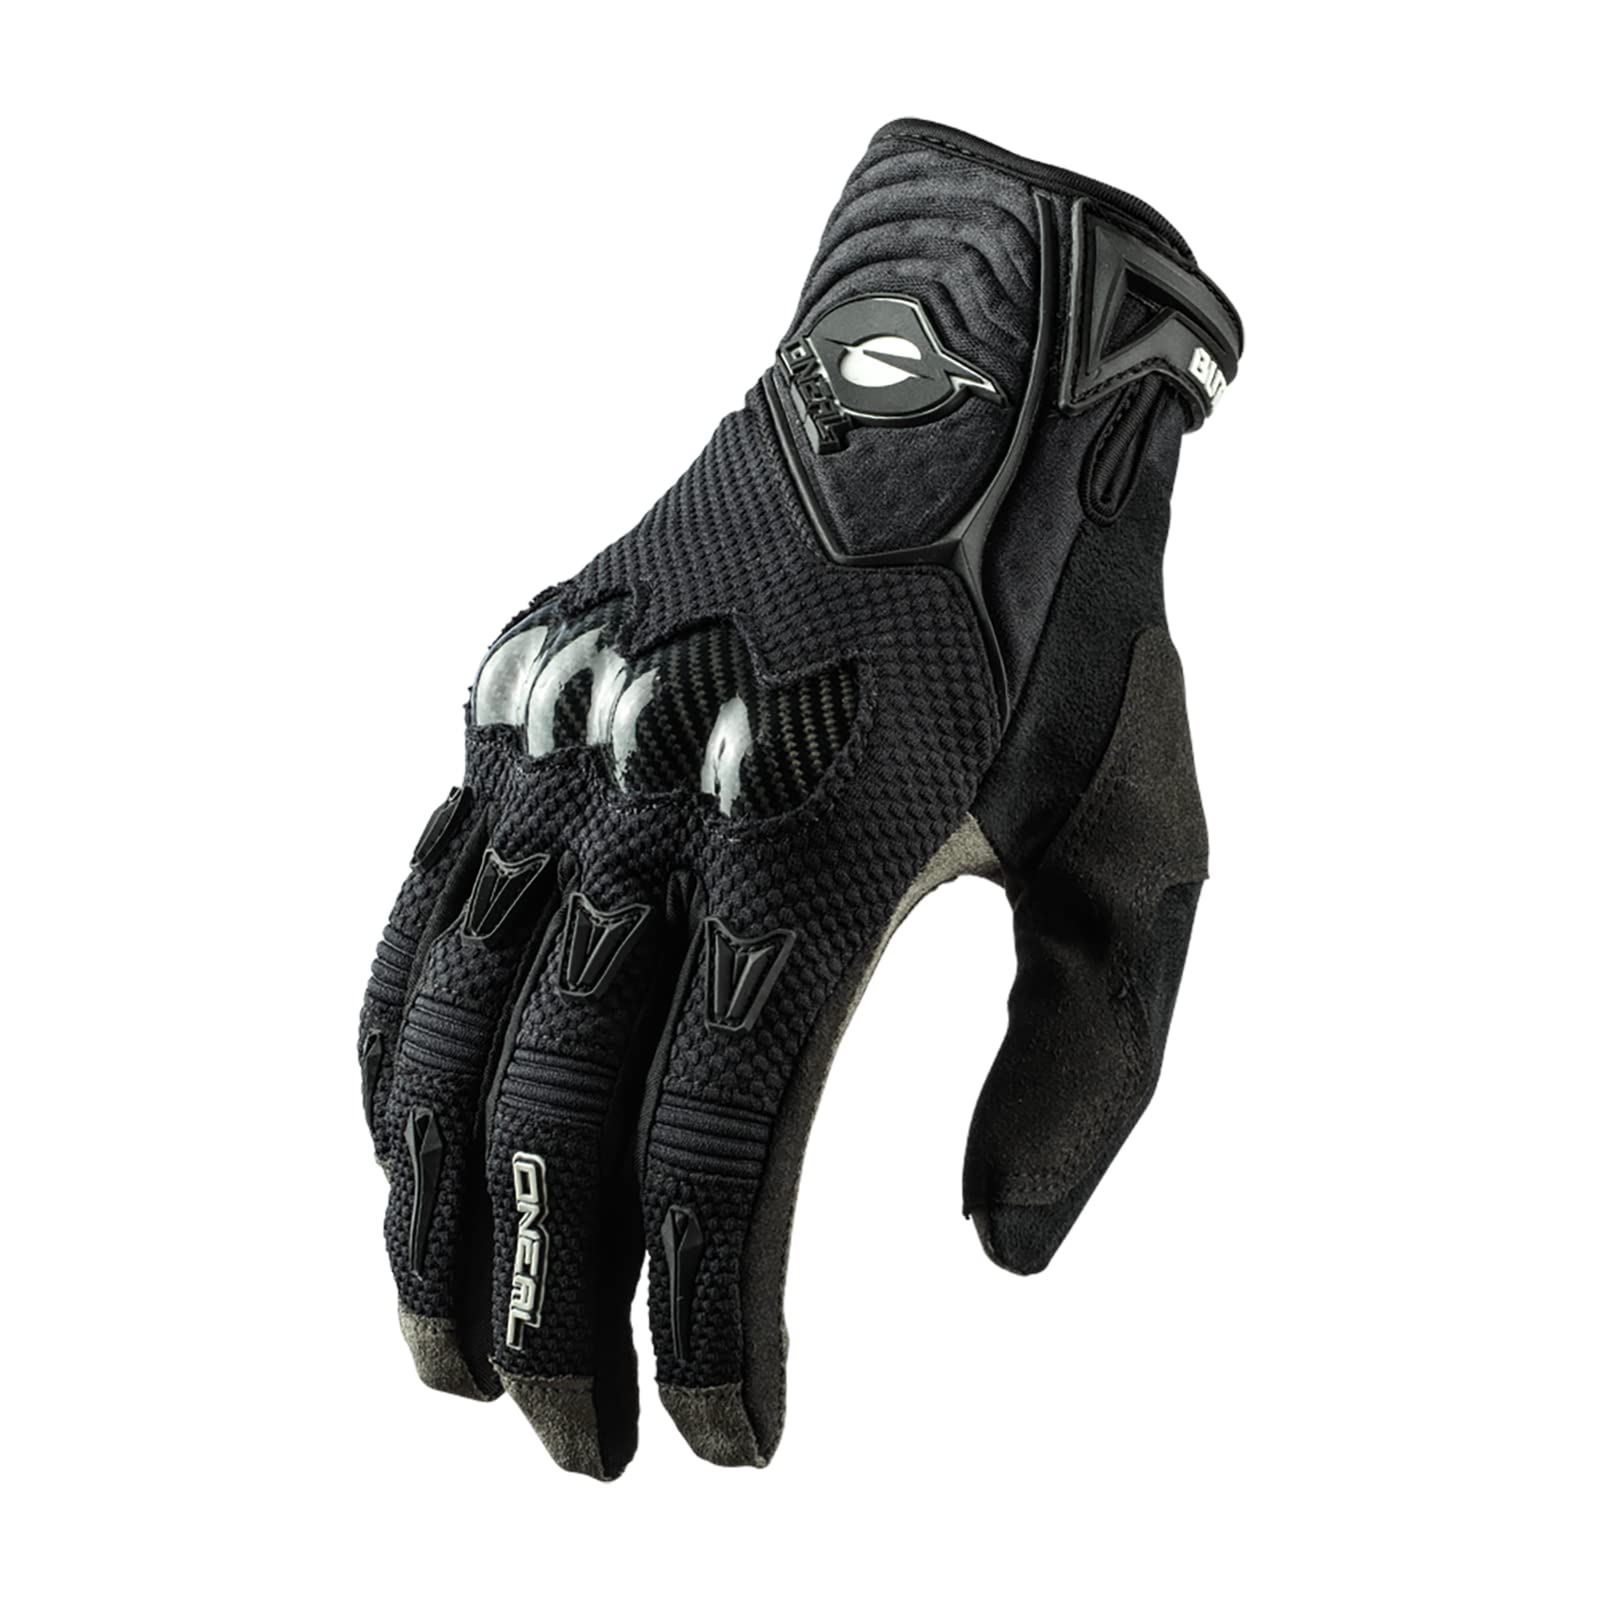 O'NEAL | Fahrrad- & Motocross-Handschuhe | MX MTB DH FR Downhill Freeride | 4-Wege-Stretch, Karbon-Knöchelschutz, Silikonbeschichtet | Butch Carbon Glove | Erwachsene | Schwarz | Größe S